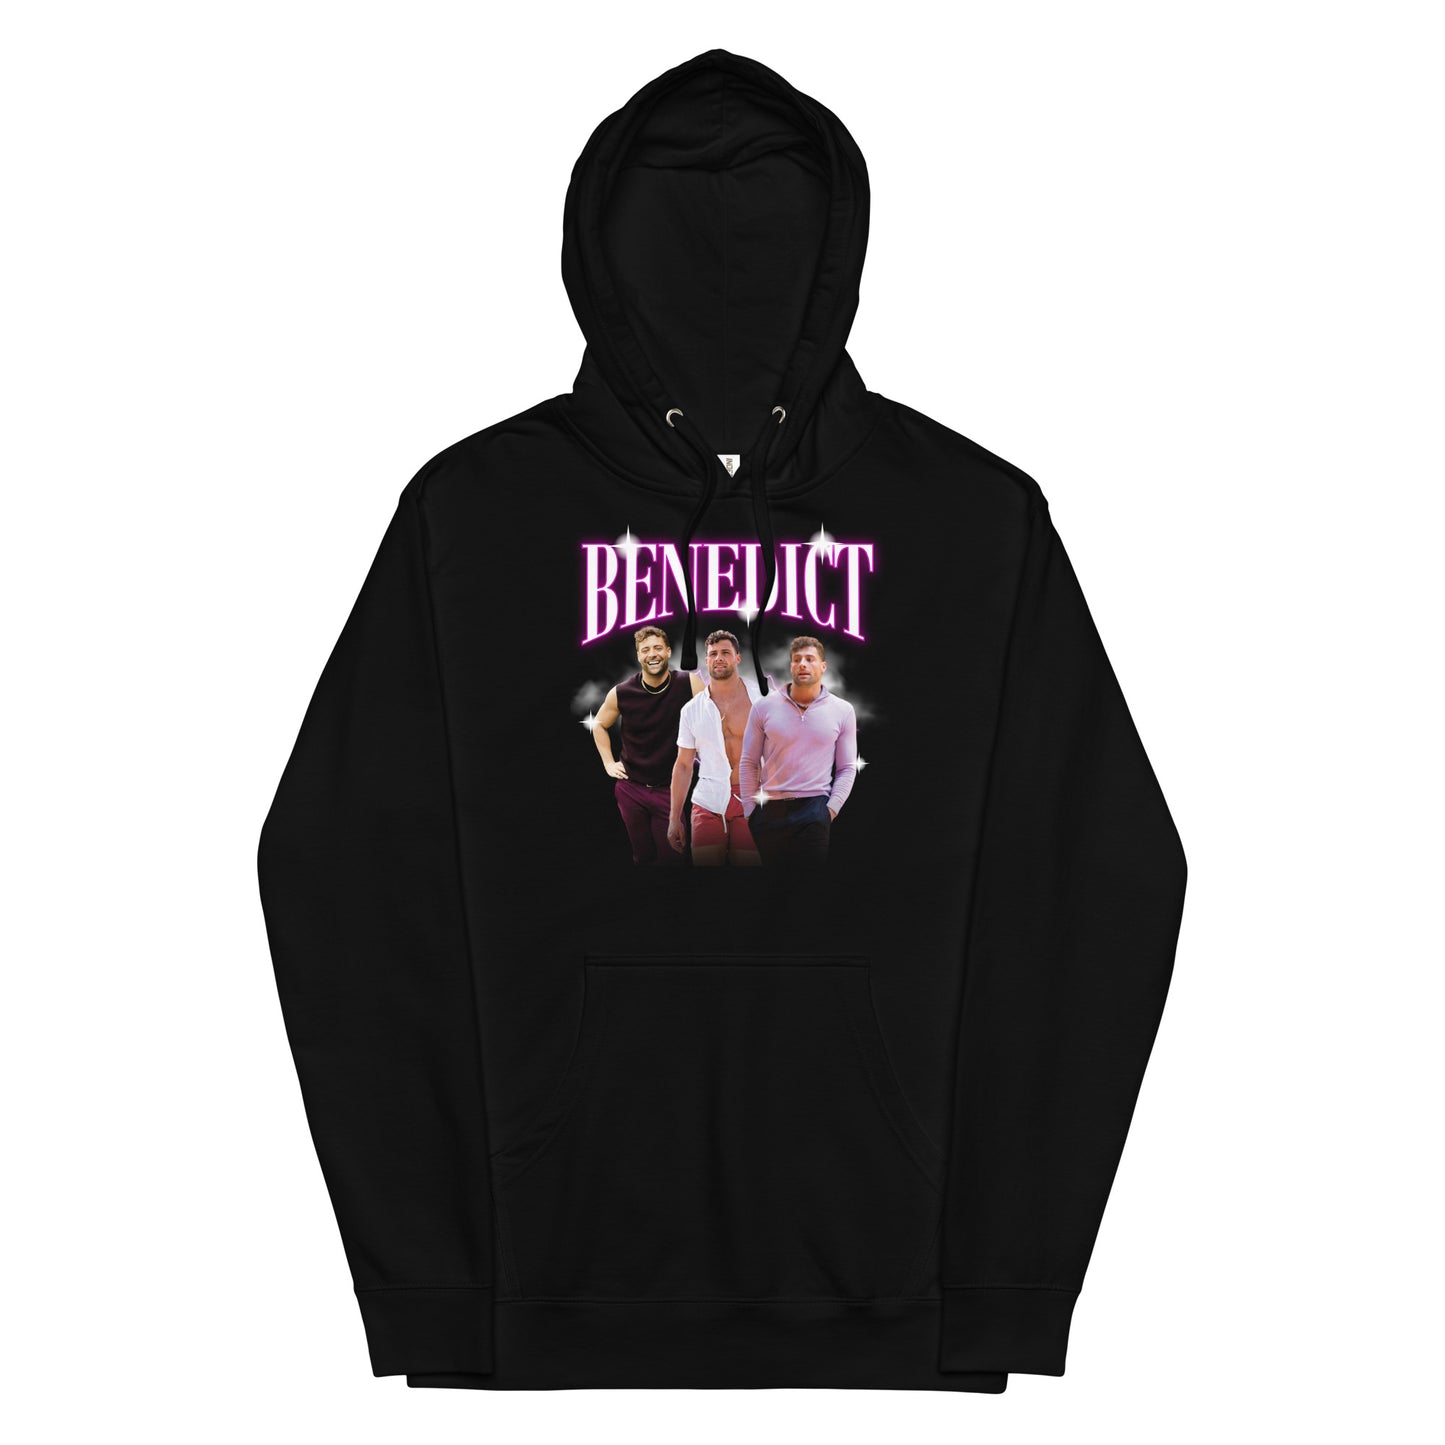 BENEDICT hoodie